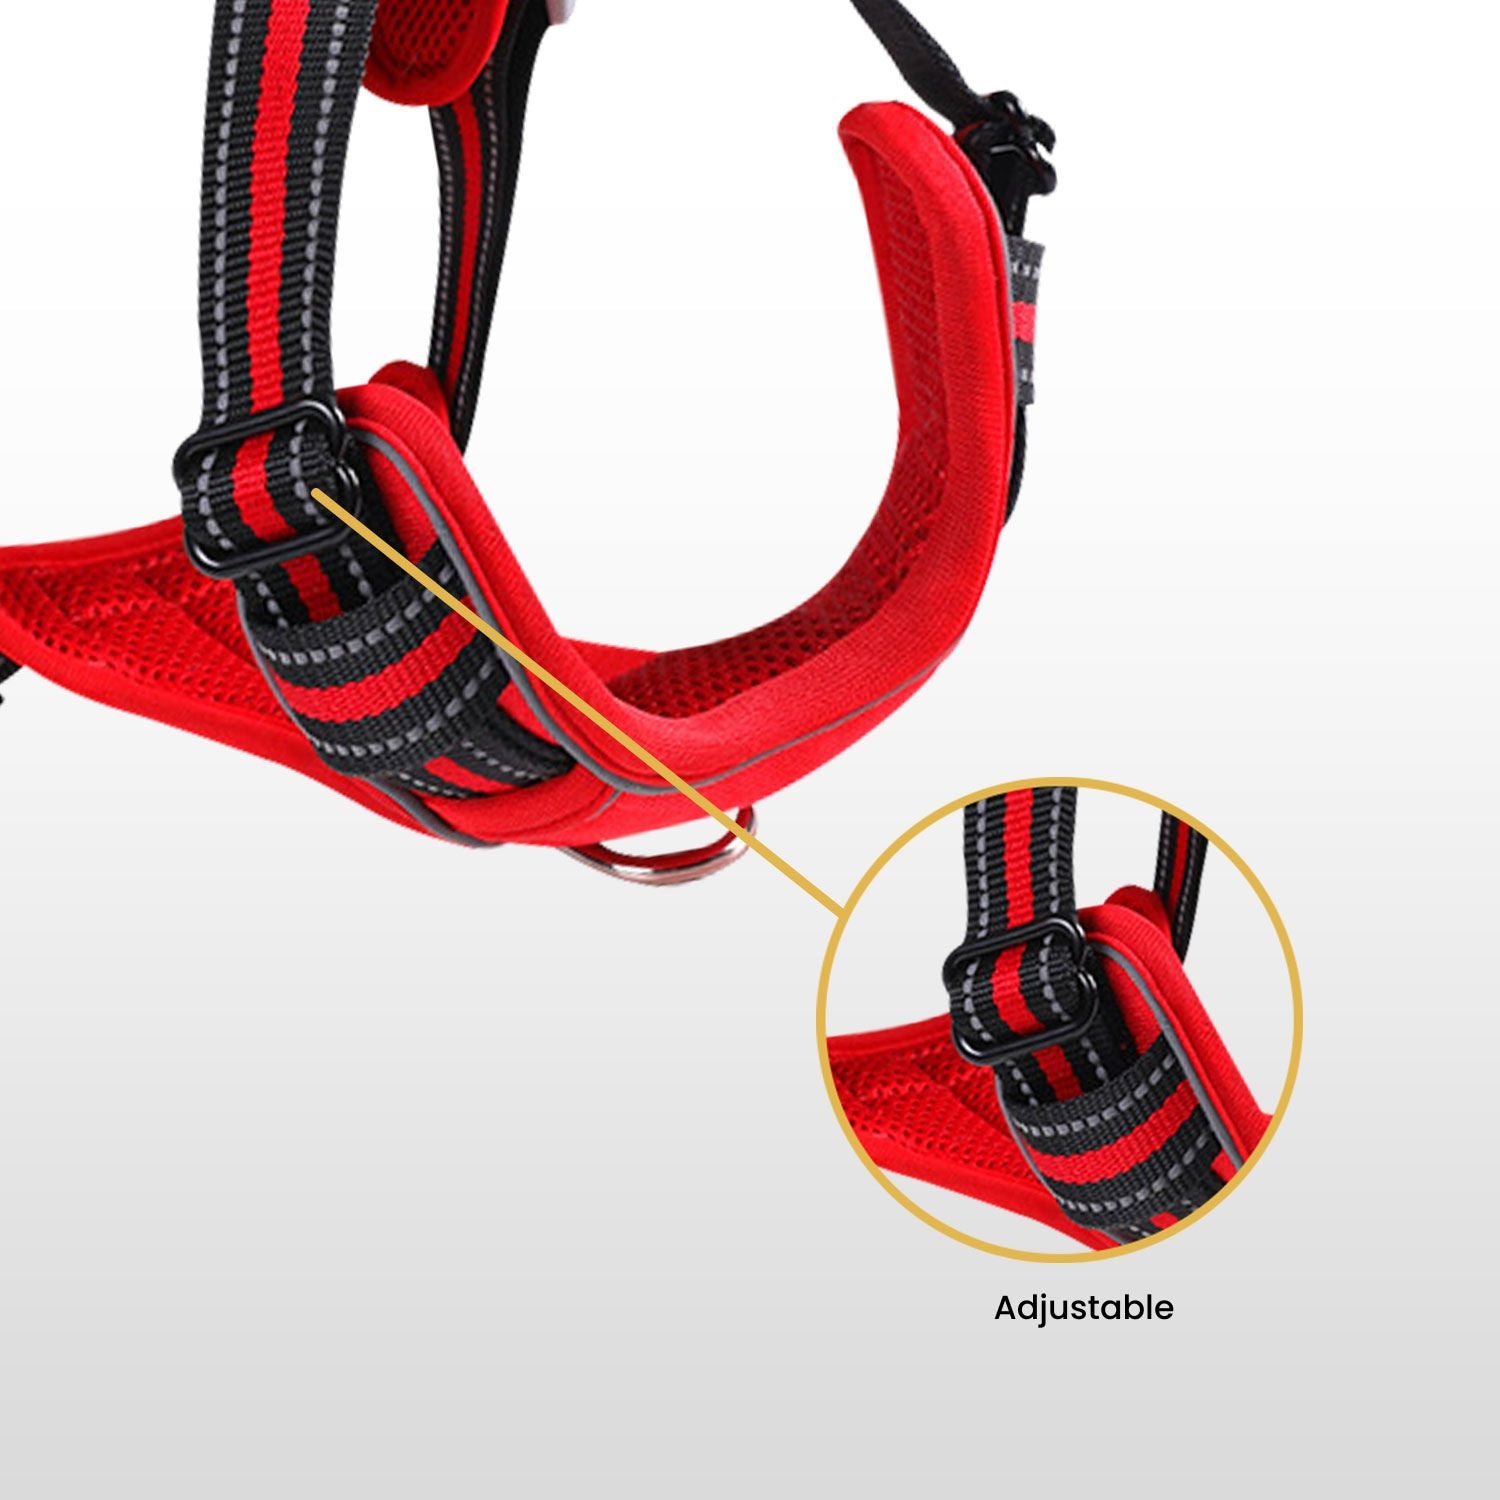 FLOOFI Dog Harness Vest XXL Size (Red)